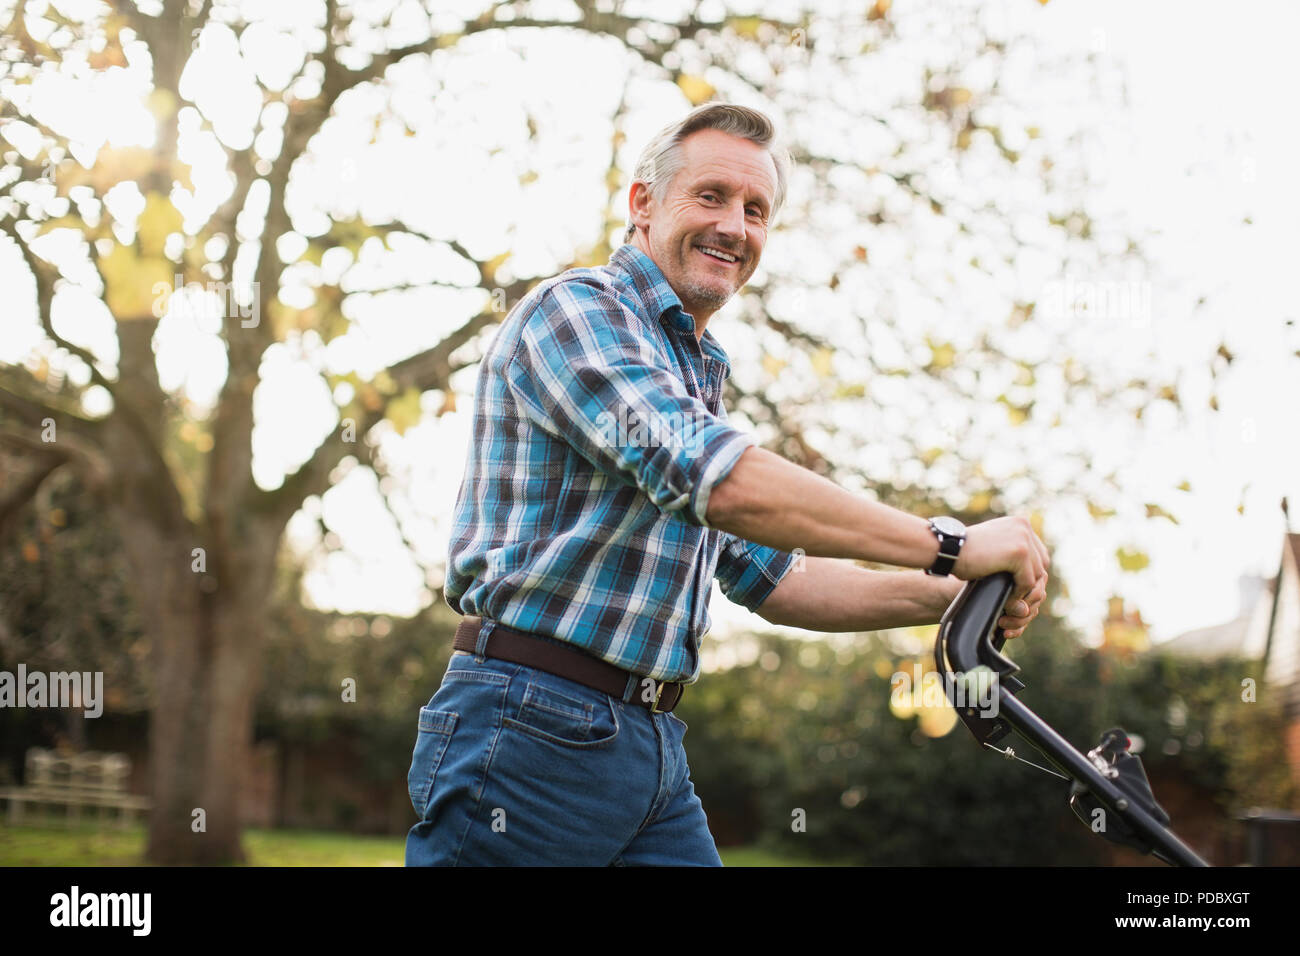 Portrait of smiling senior man mowing lawn Banque D'Images